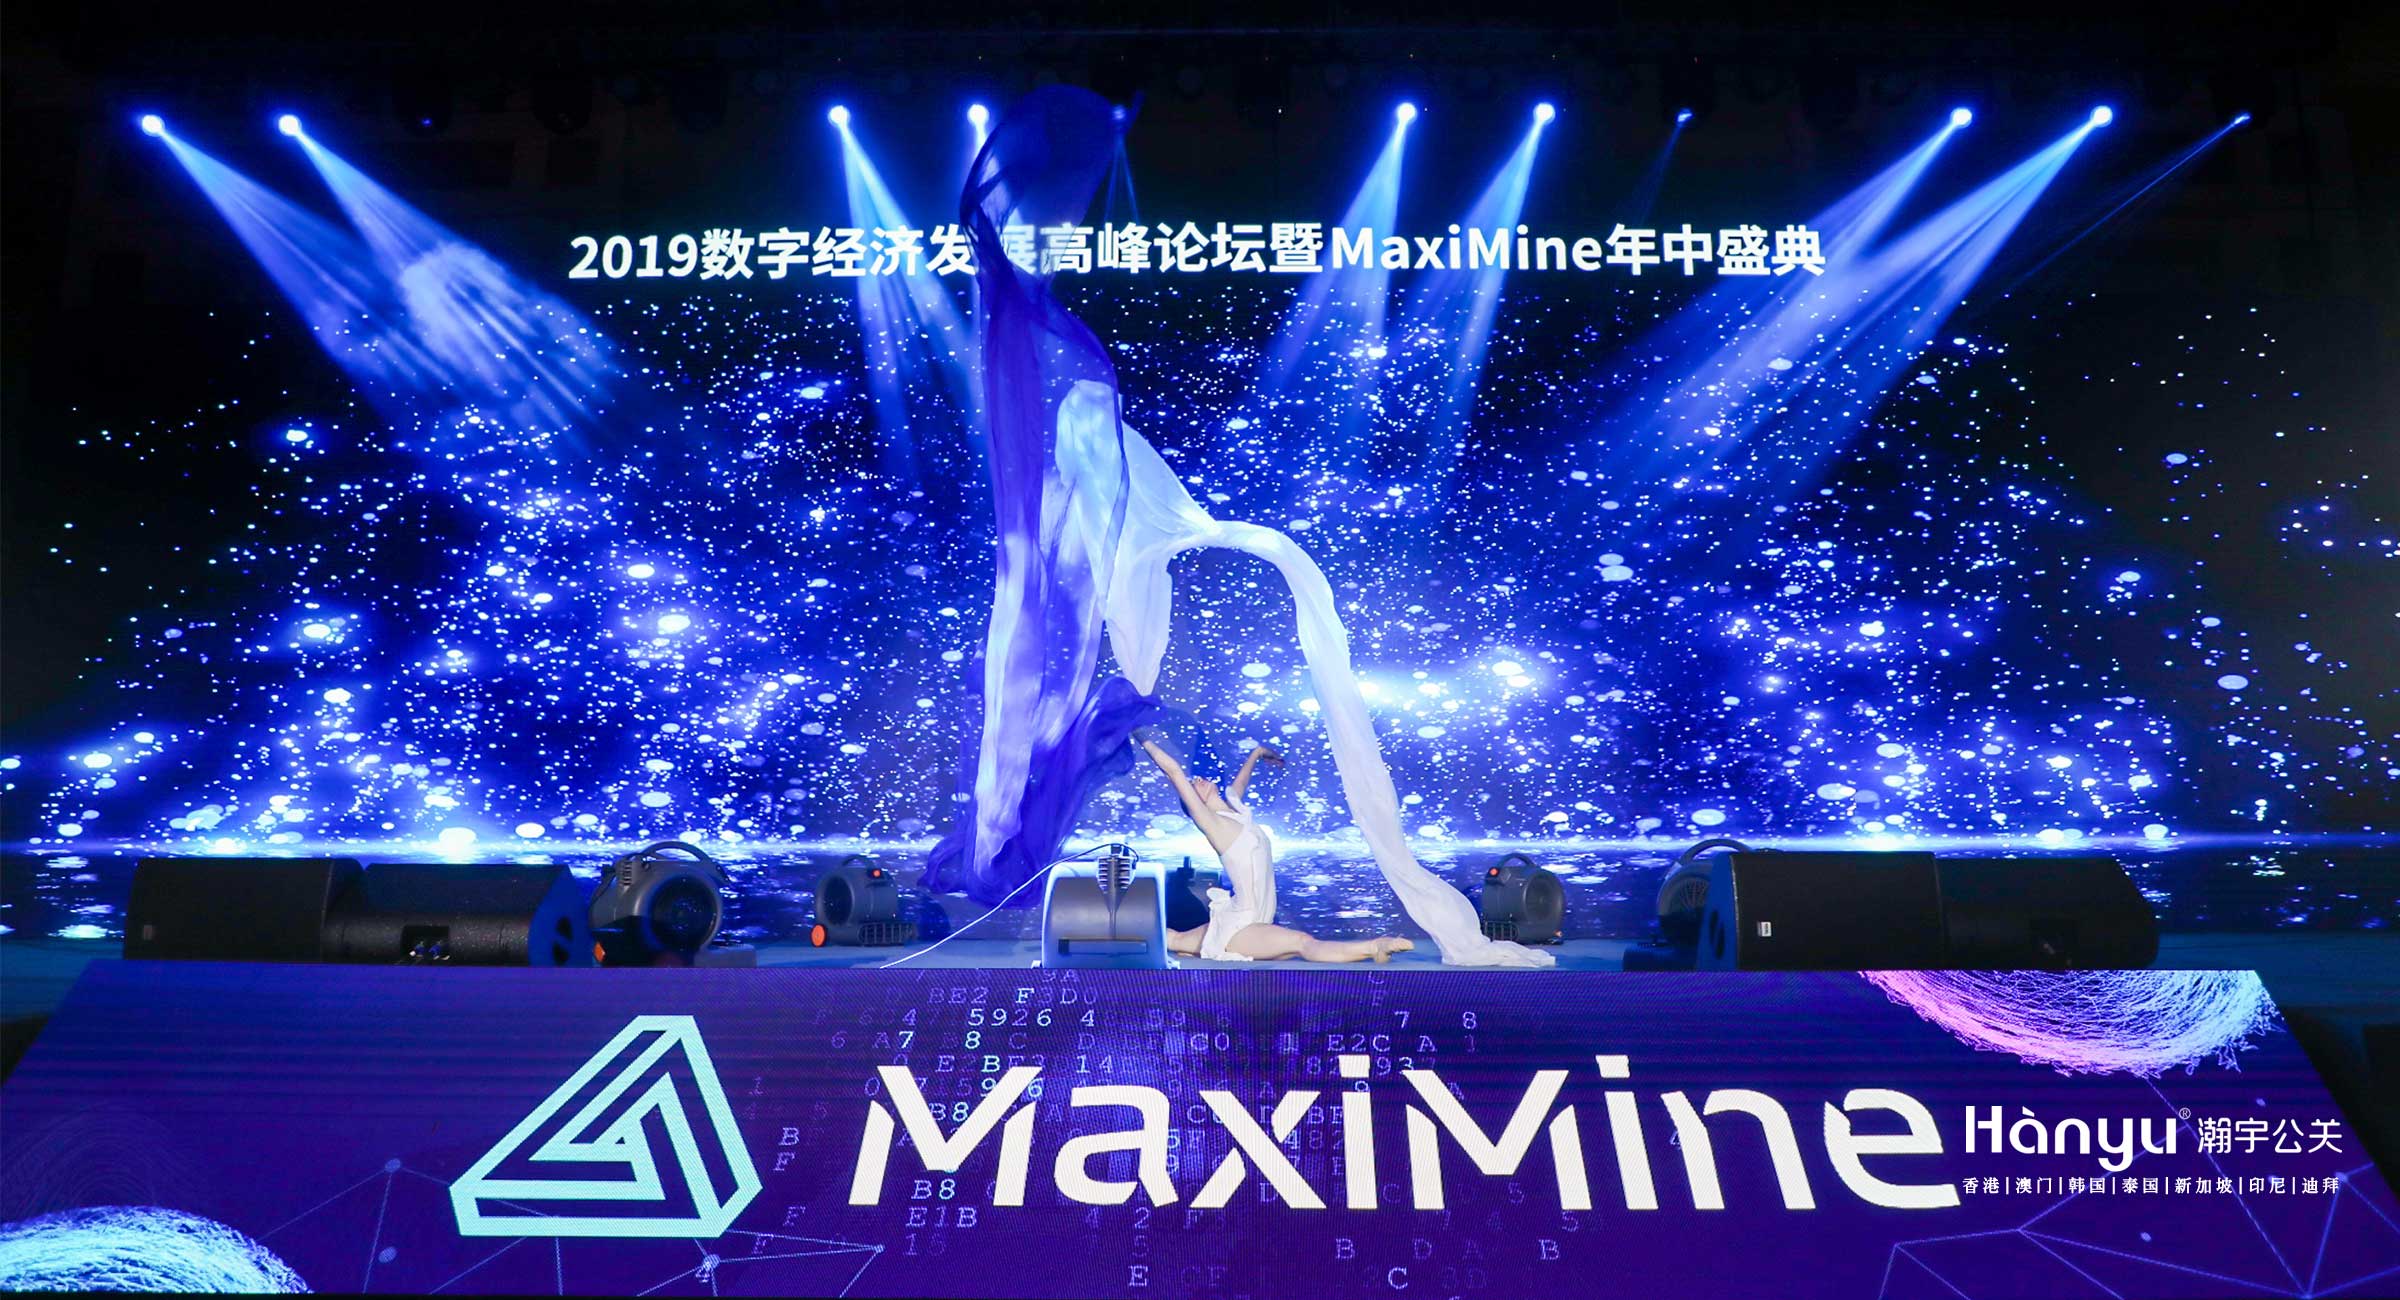 2019数字经济发展高峰论坛暨MaxiMine年中盛典